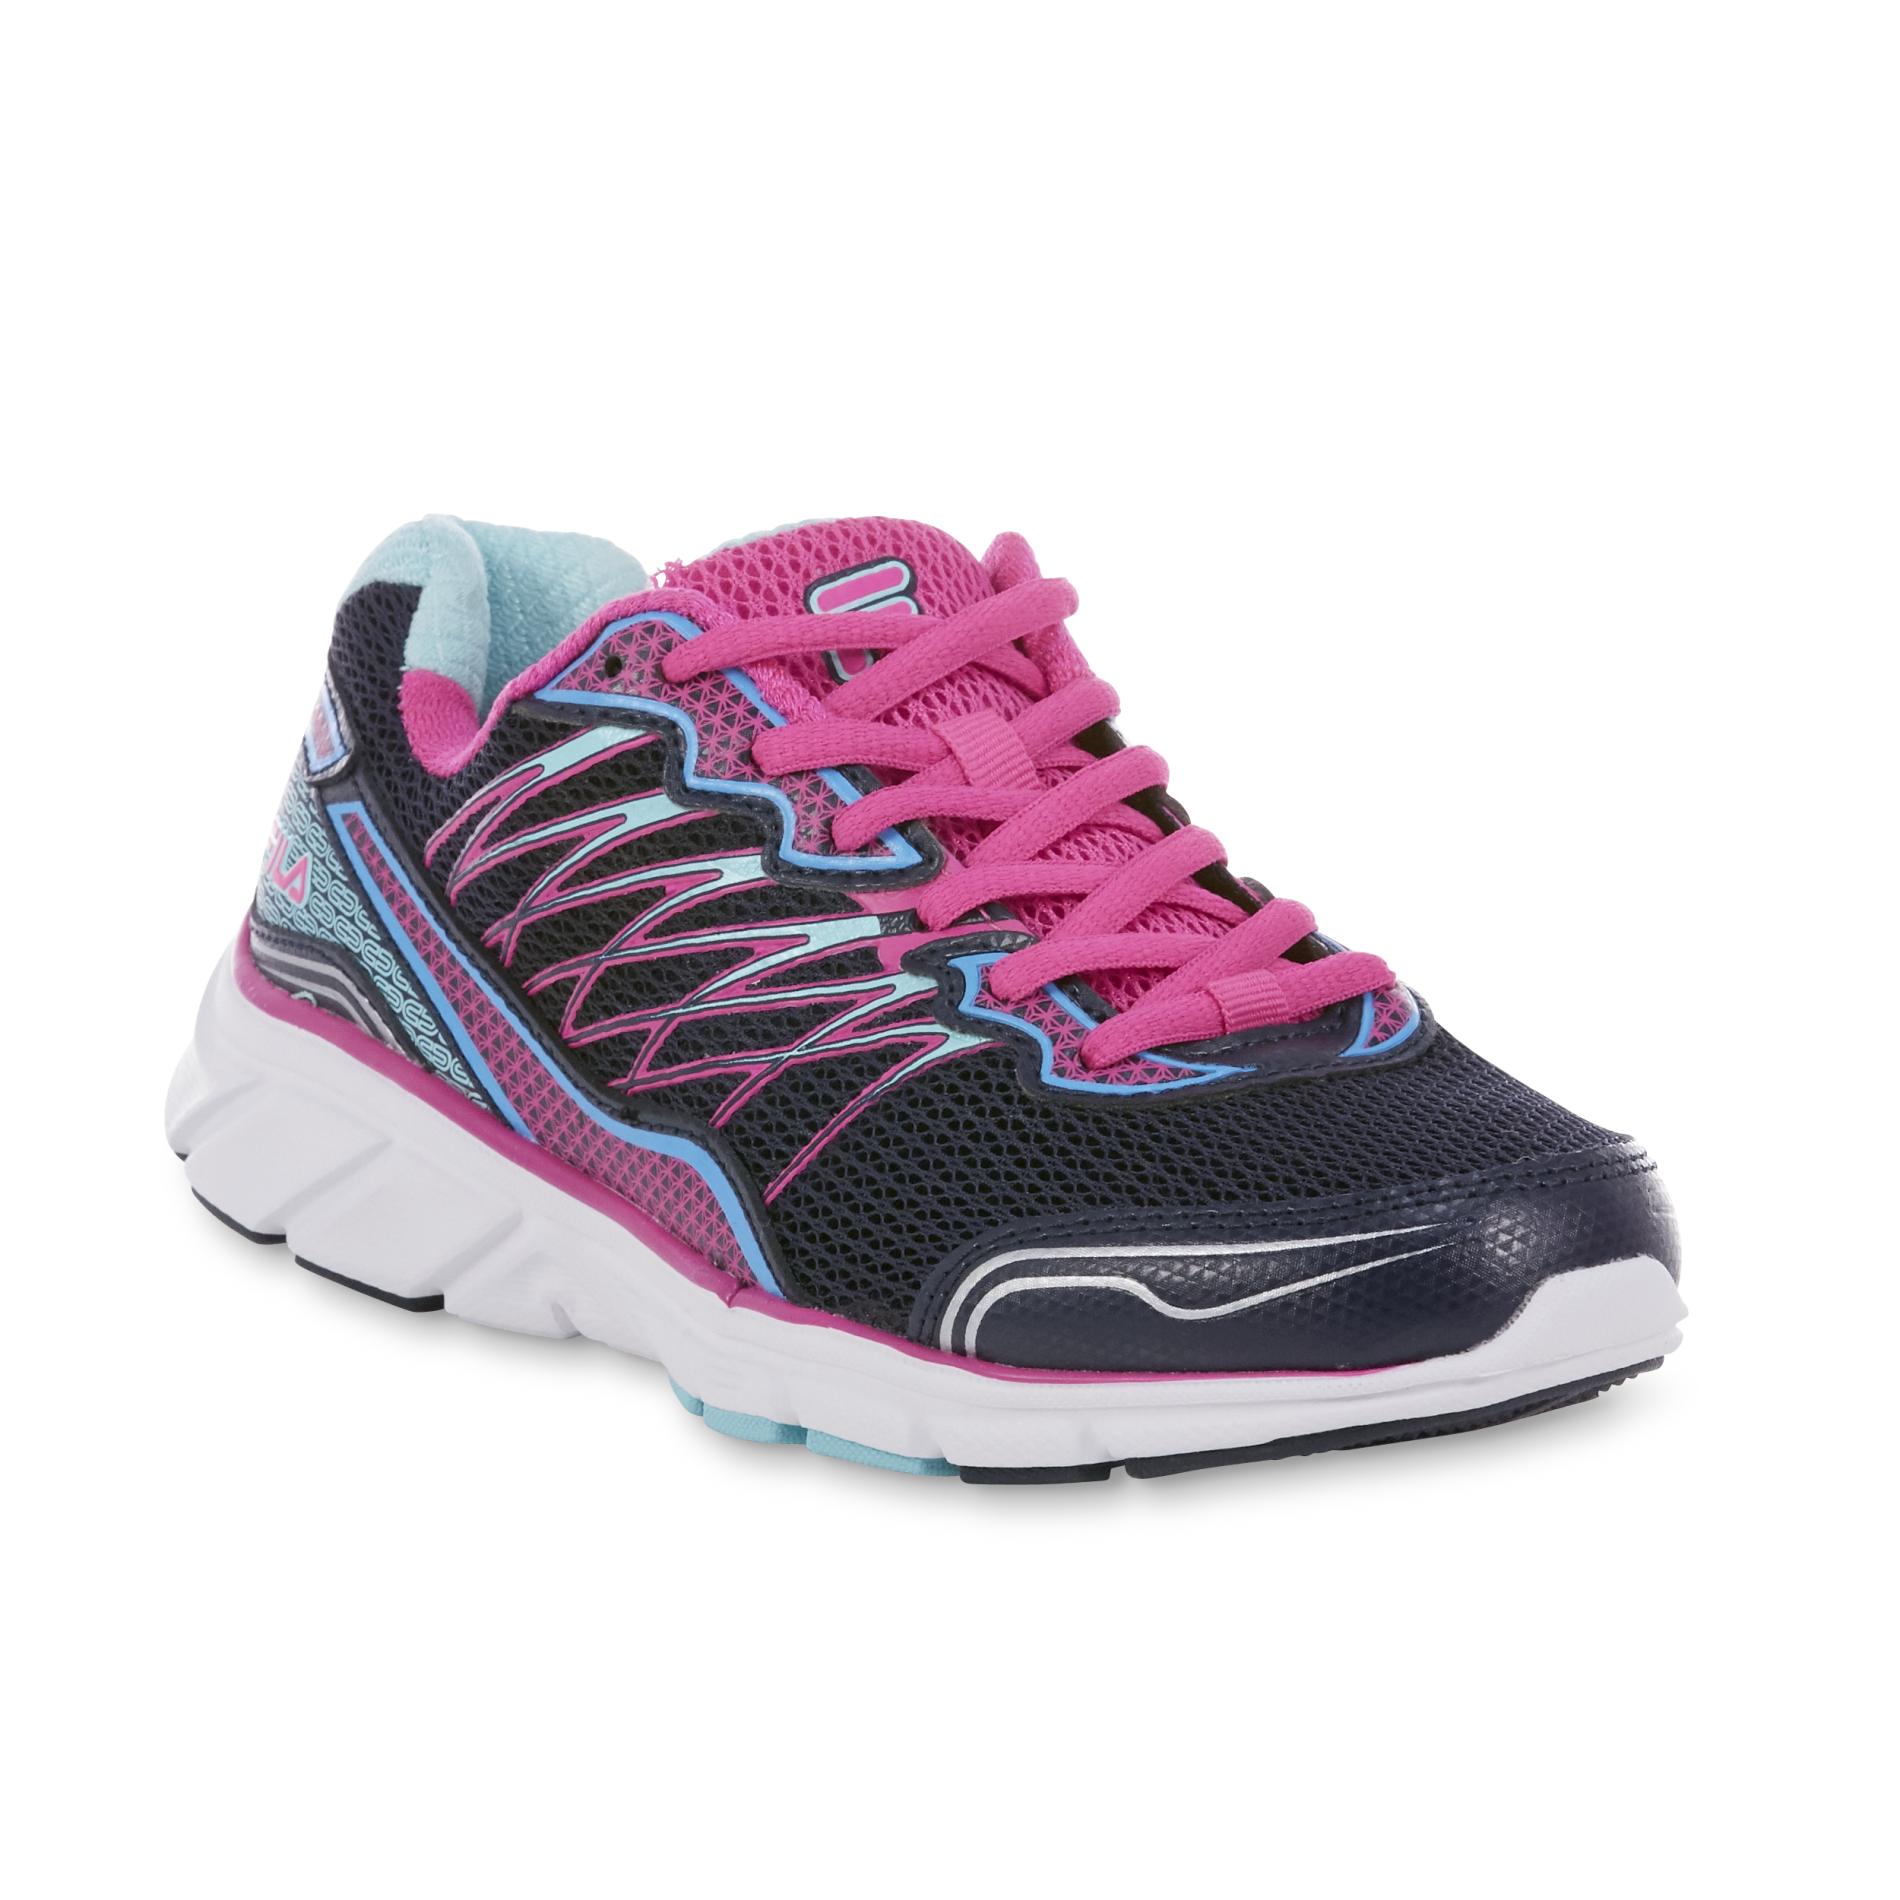 Fila Women's Countdown 2 Navy/Pink/Aruba Blue Running Shoe